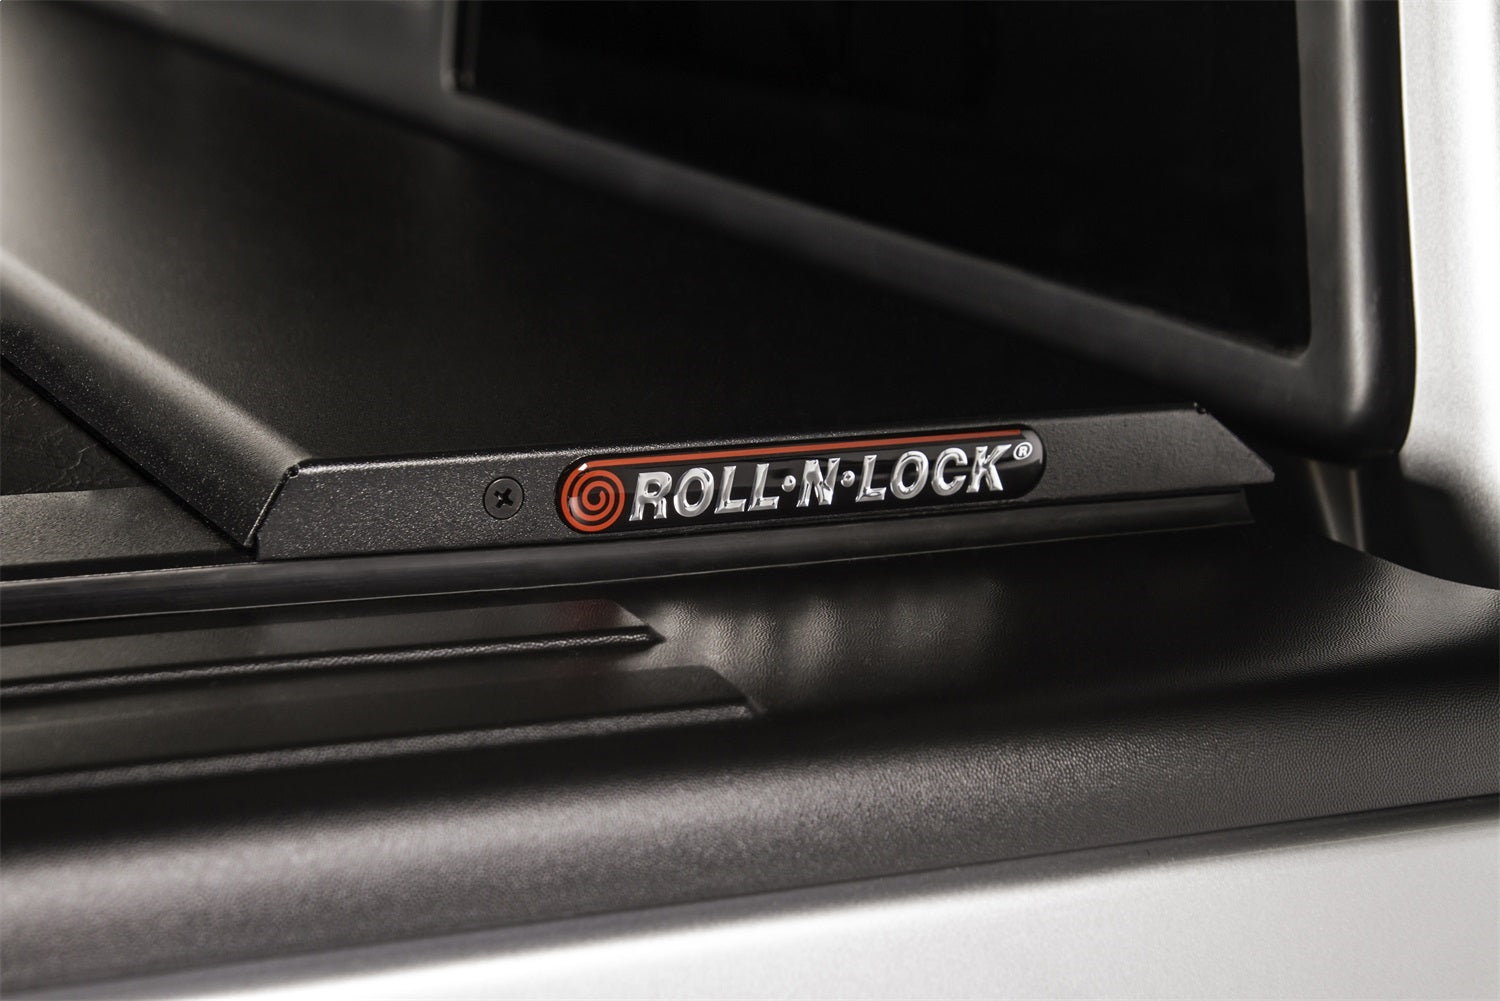 Roll-N-Lock LG880M Roll-N-Lock M-Series Truck Bed Cover Fits 17-22 Titan